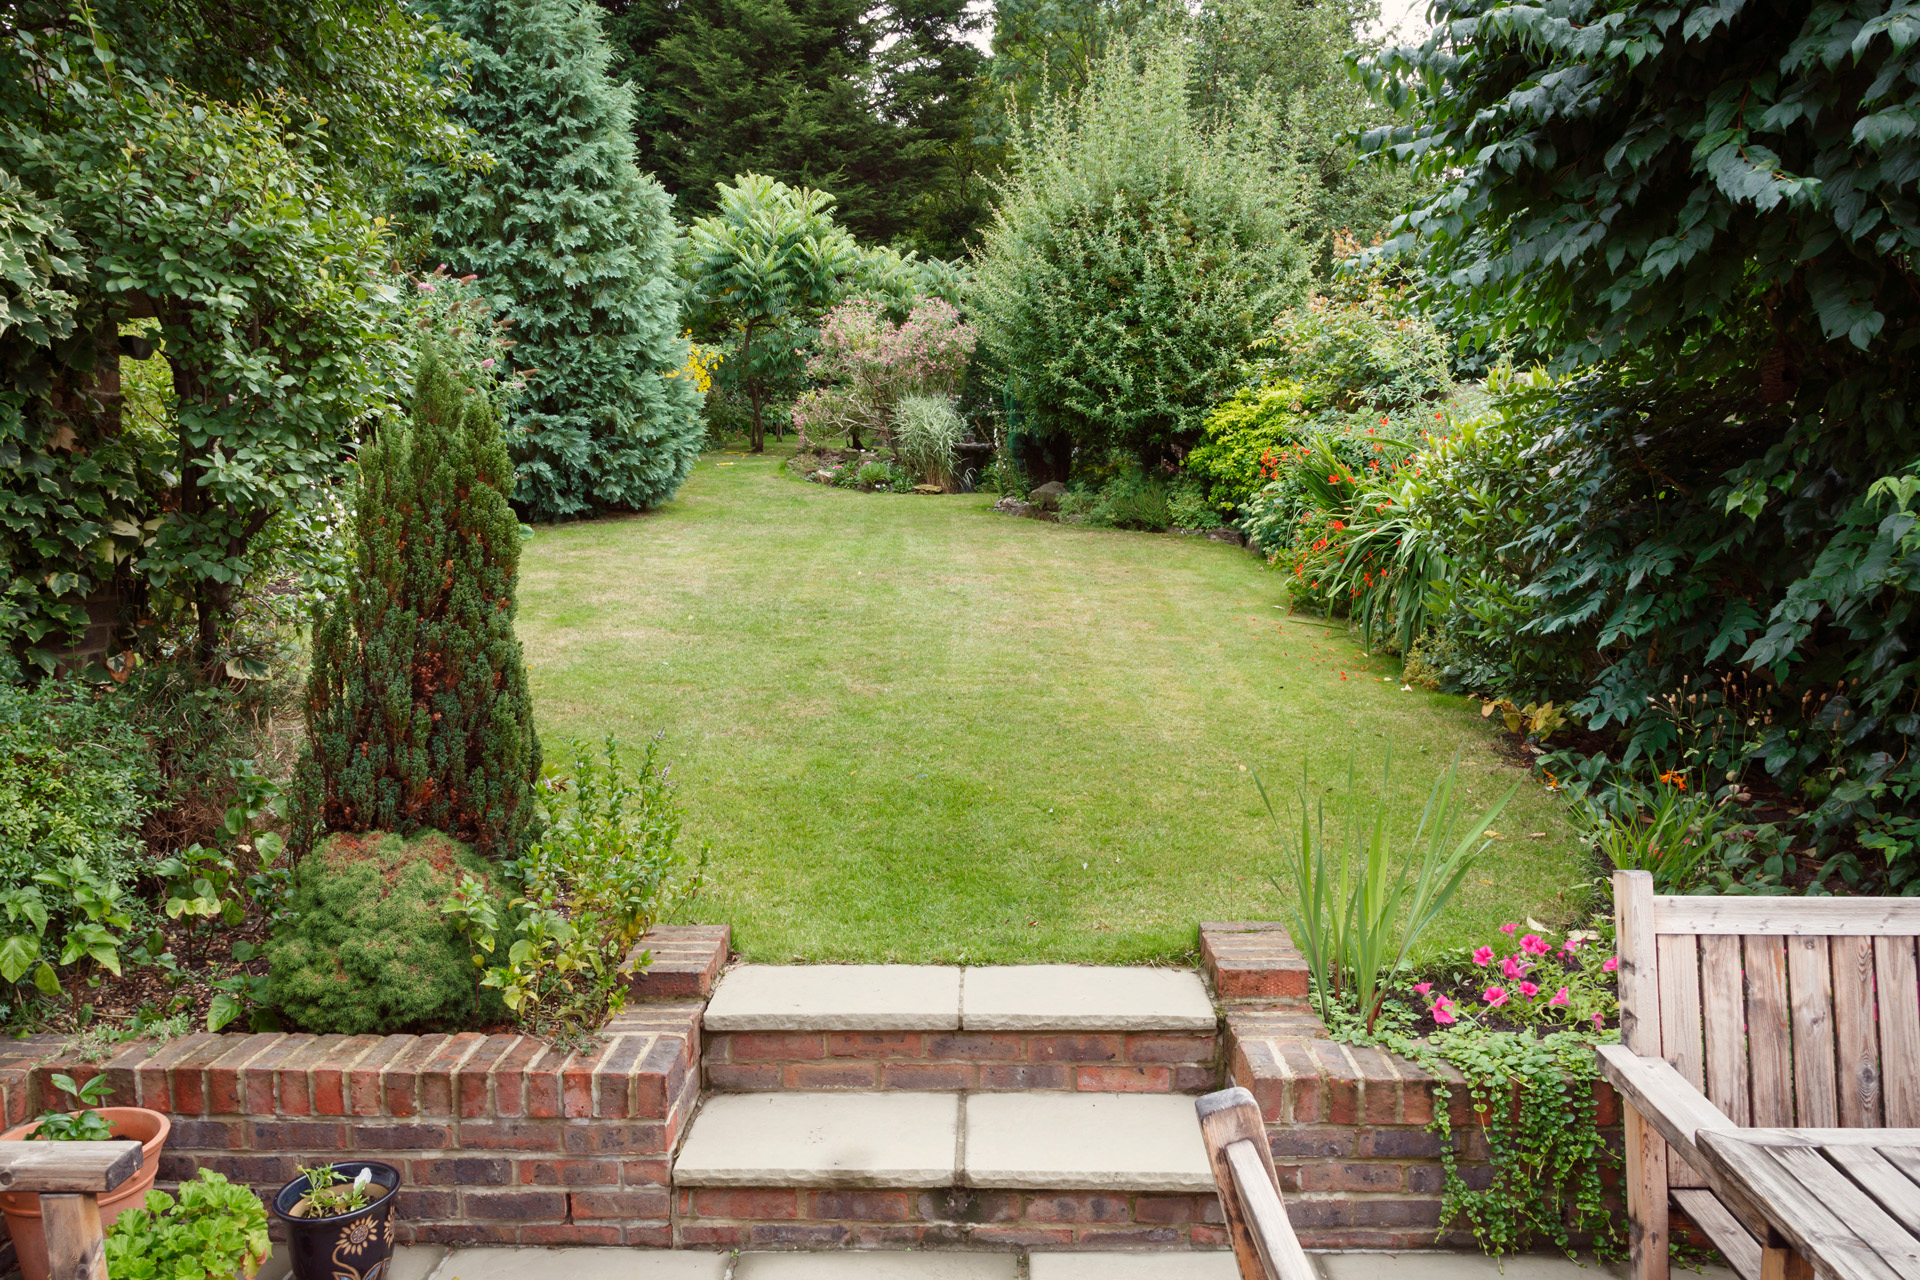 Kleingarten mit Terrasse, Gartenmöbeln und Pflanzenkübeln vorne, dahinter Rasenfläche mit kleinen Bäumen und Sträuchern.